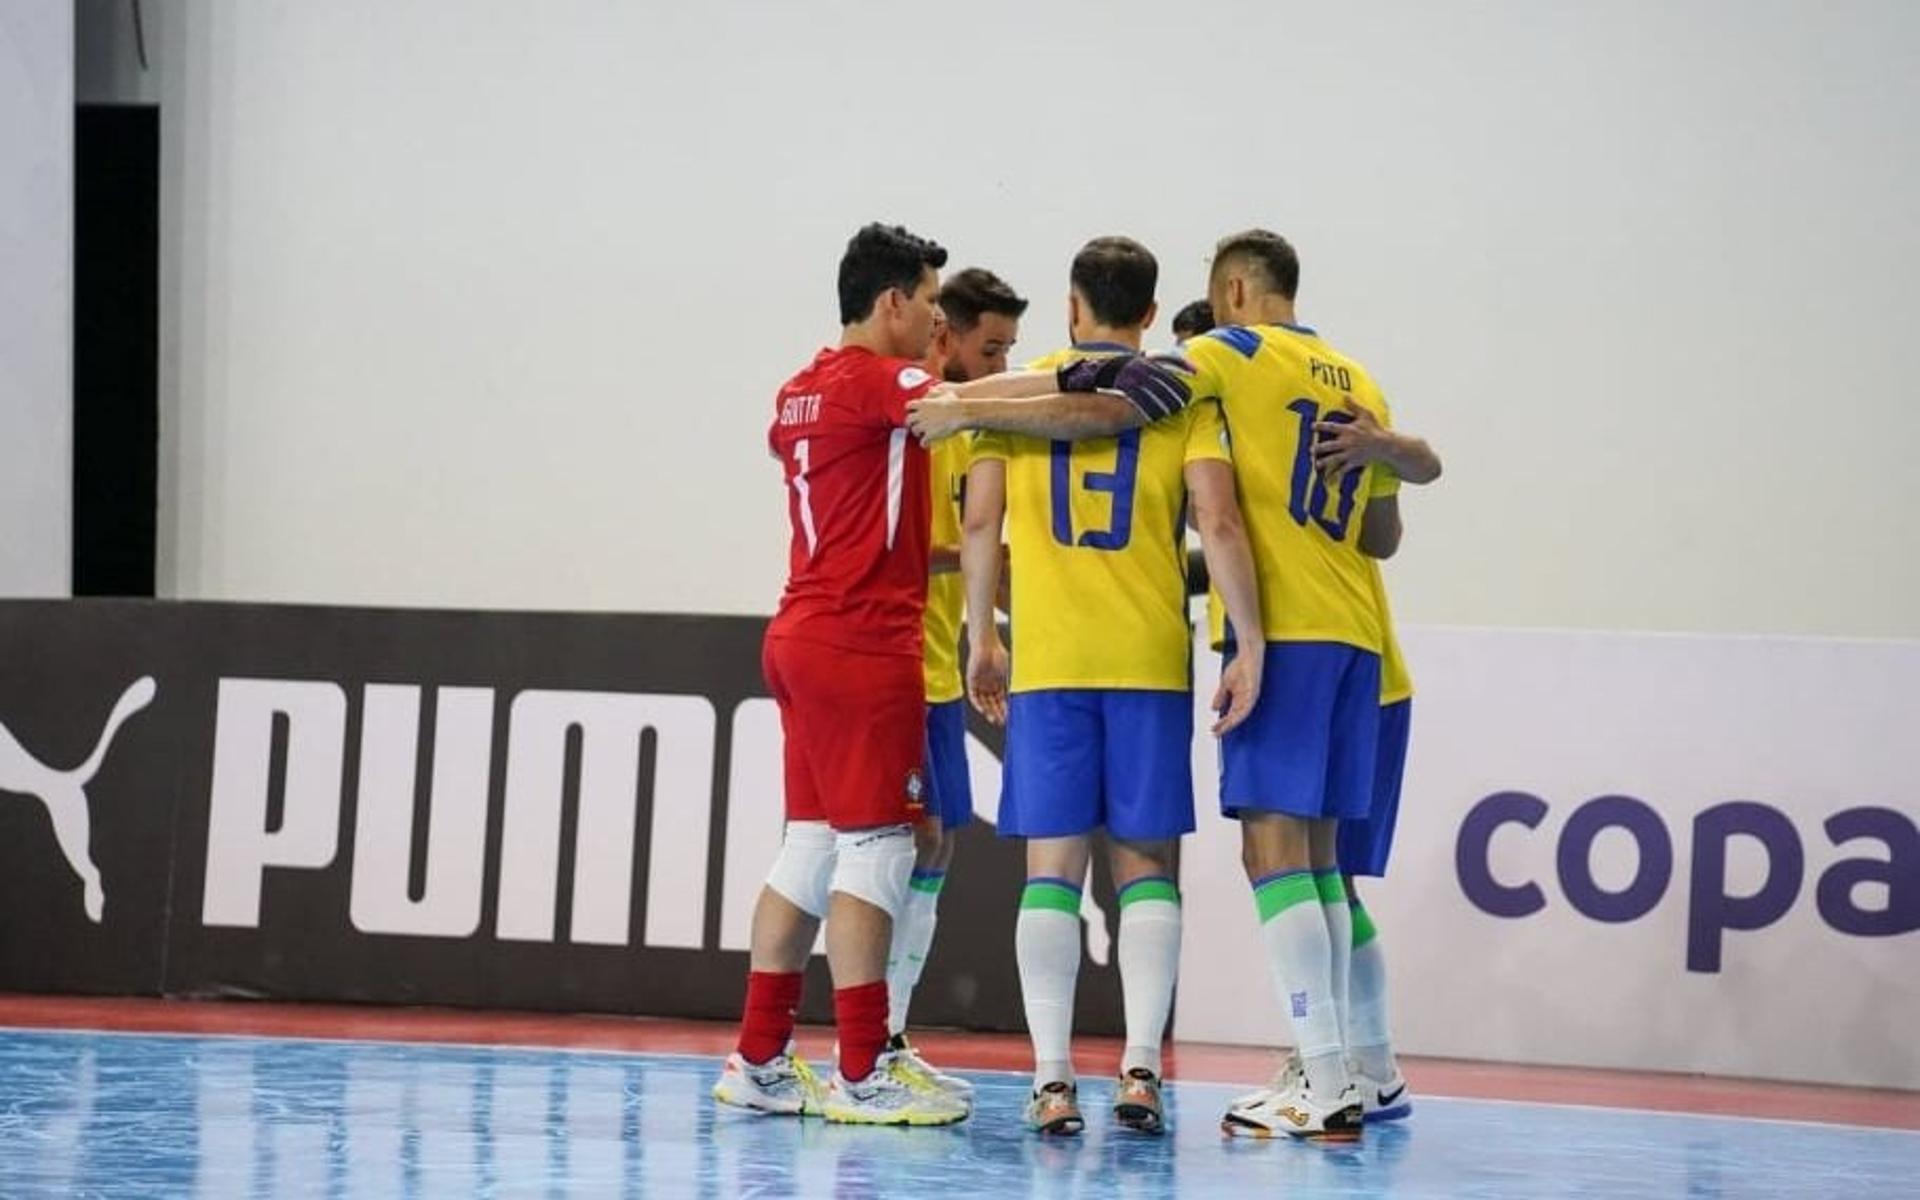 Brasil-Copa-America-de-Futsal-aspect-ratio-512-320